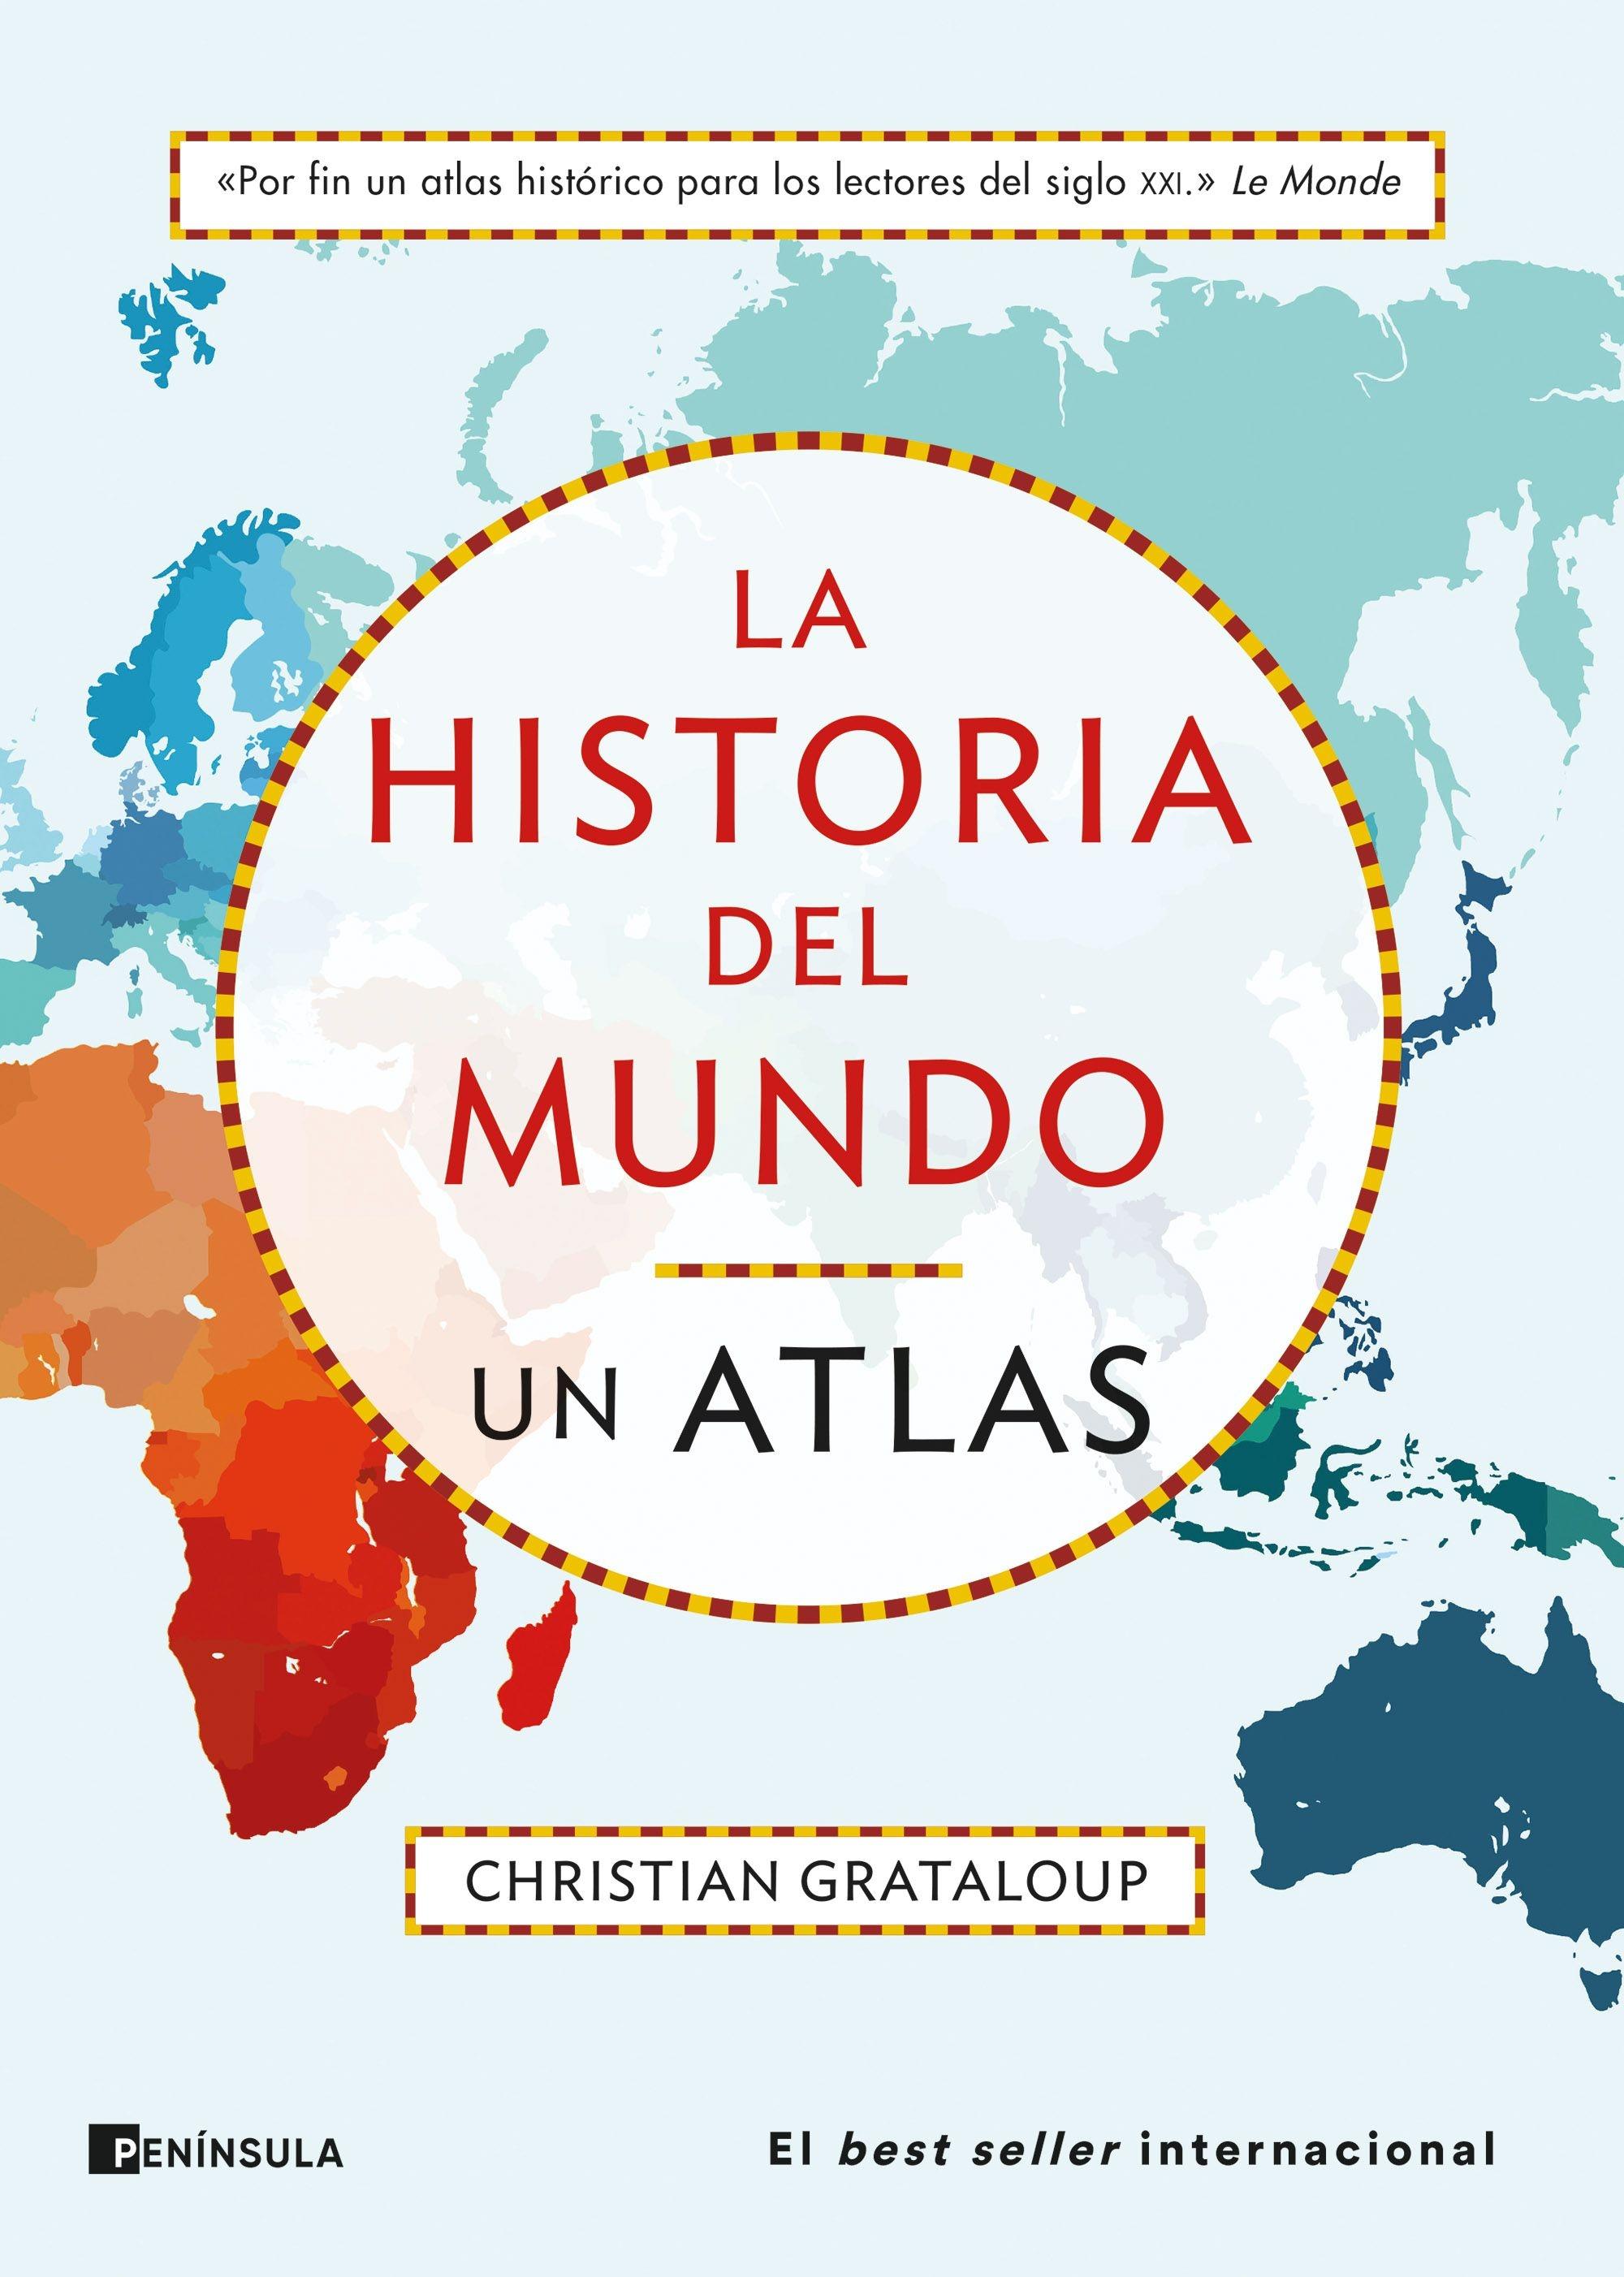 La Historia del Mundo. un Atlas "Un Recorrido desde Mesopotamia a la Actualidad en 515 Mapas". 